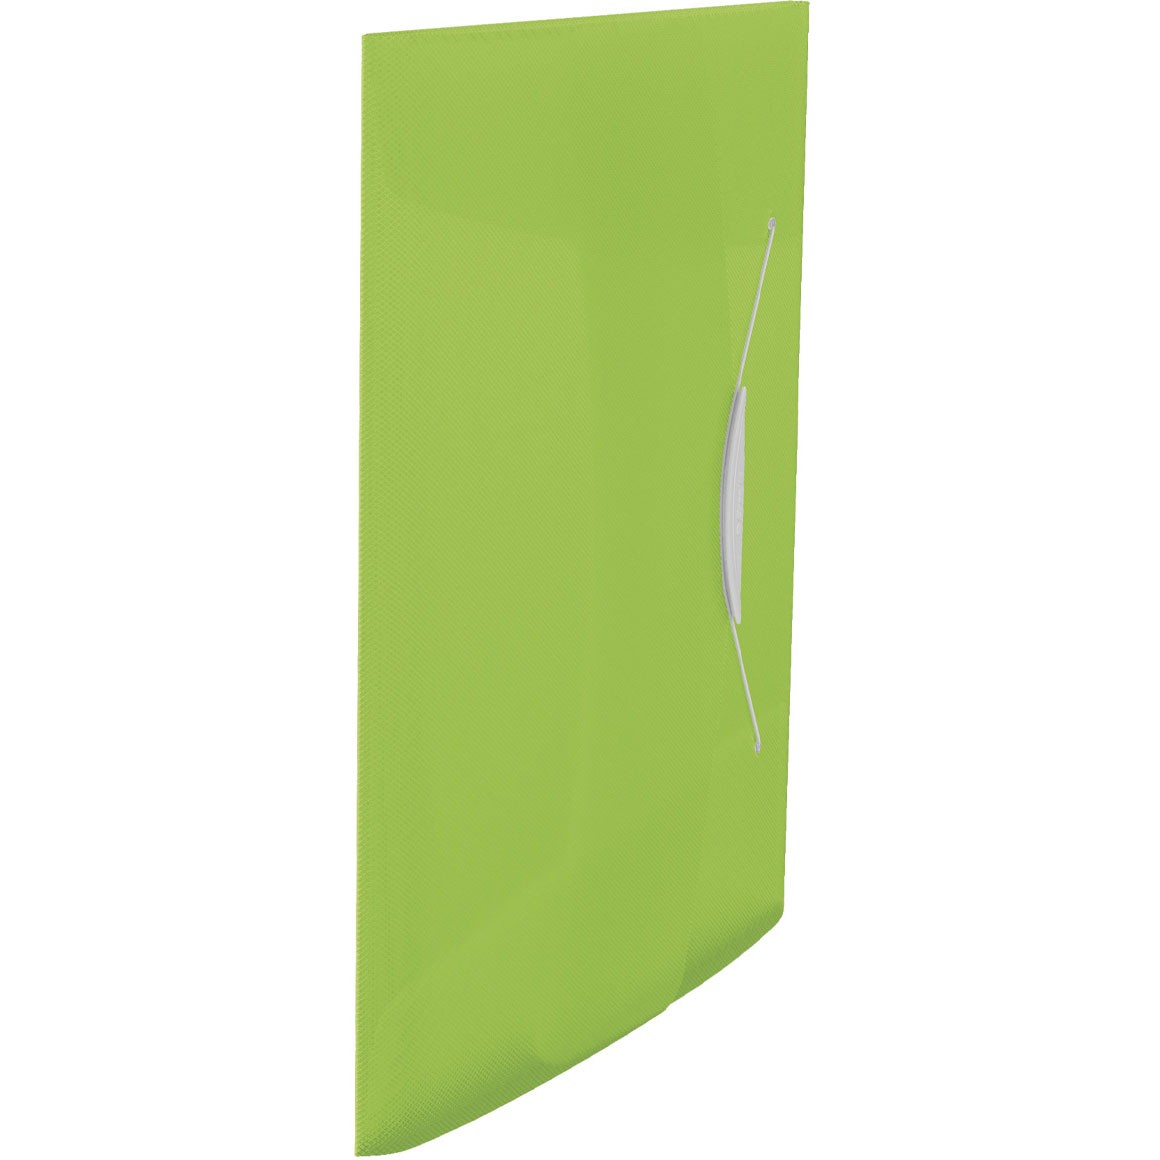 Esselte VIVIDA elastikmappe med 3 klapper i A4 i farven grøn